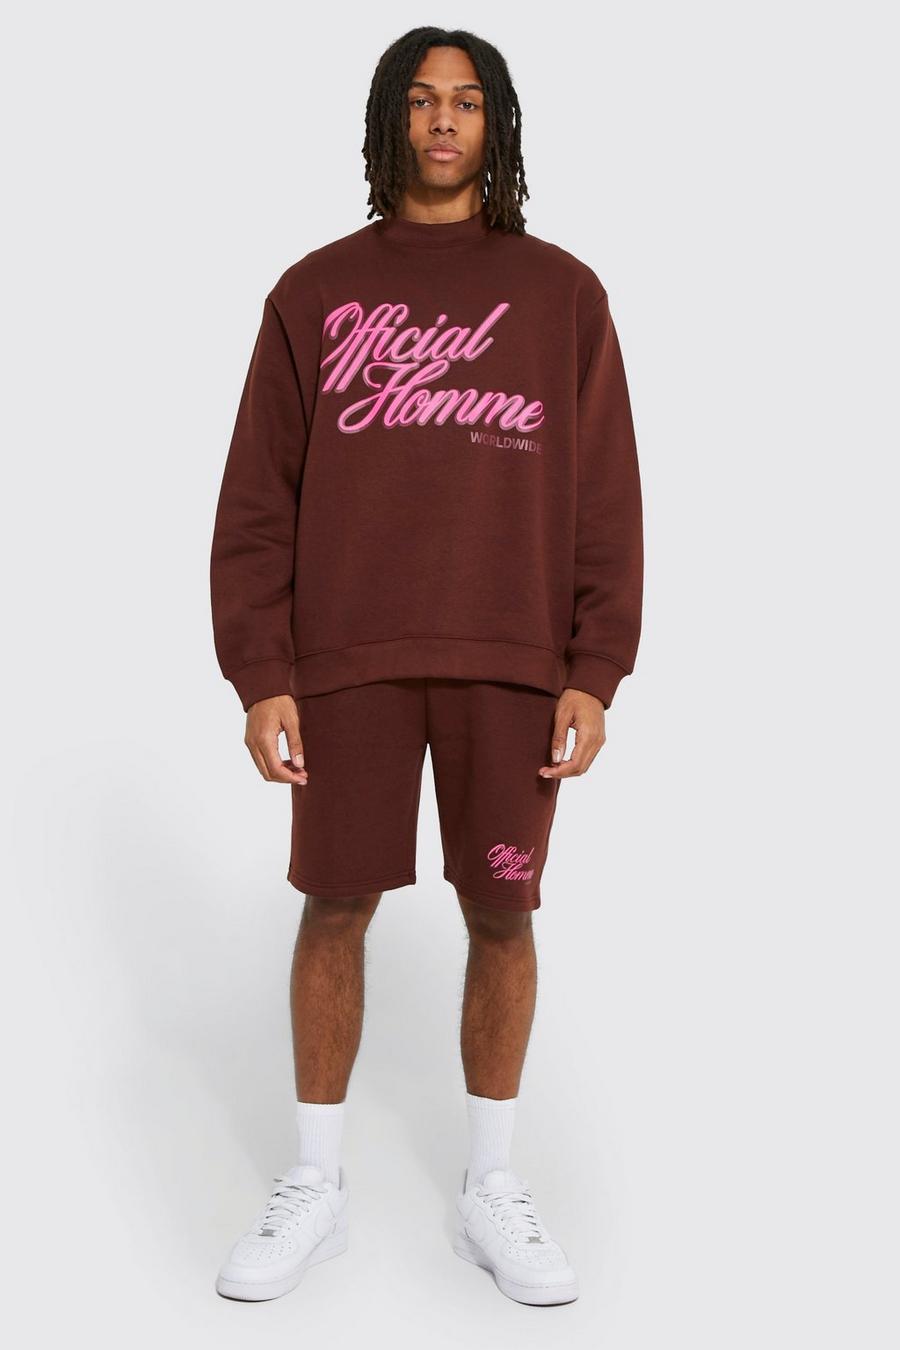 Chocolate brun Oversized Homme Sweatshirt Short Tracksuit